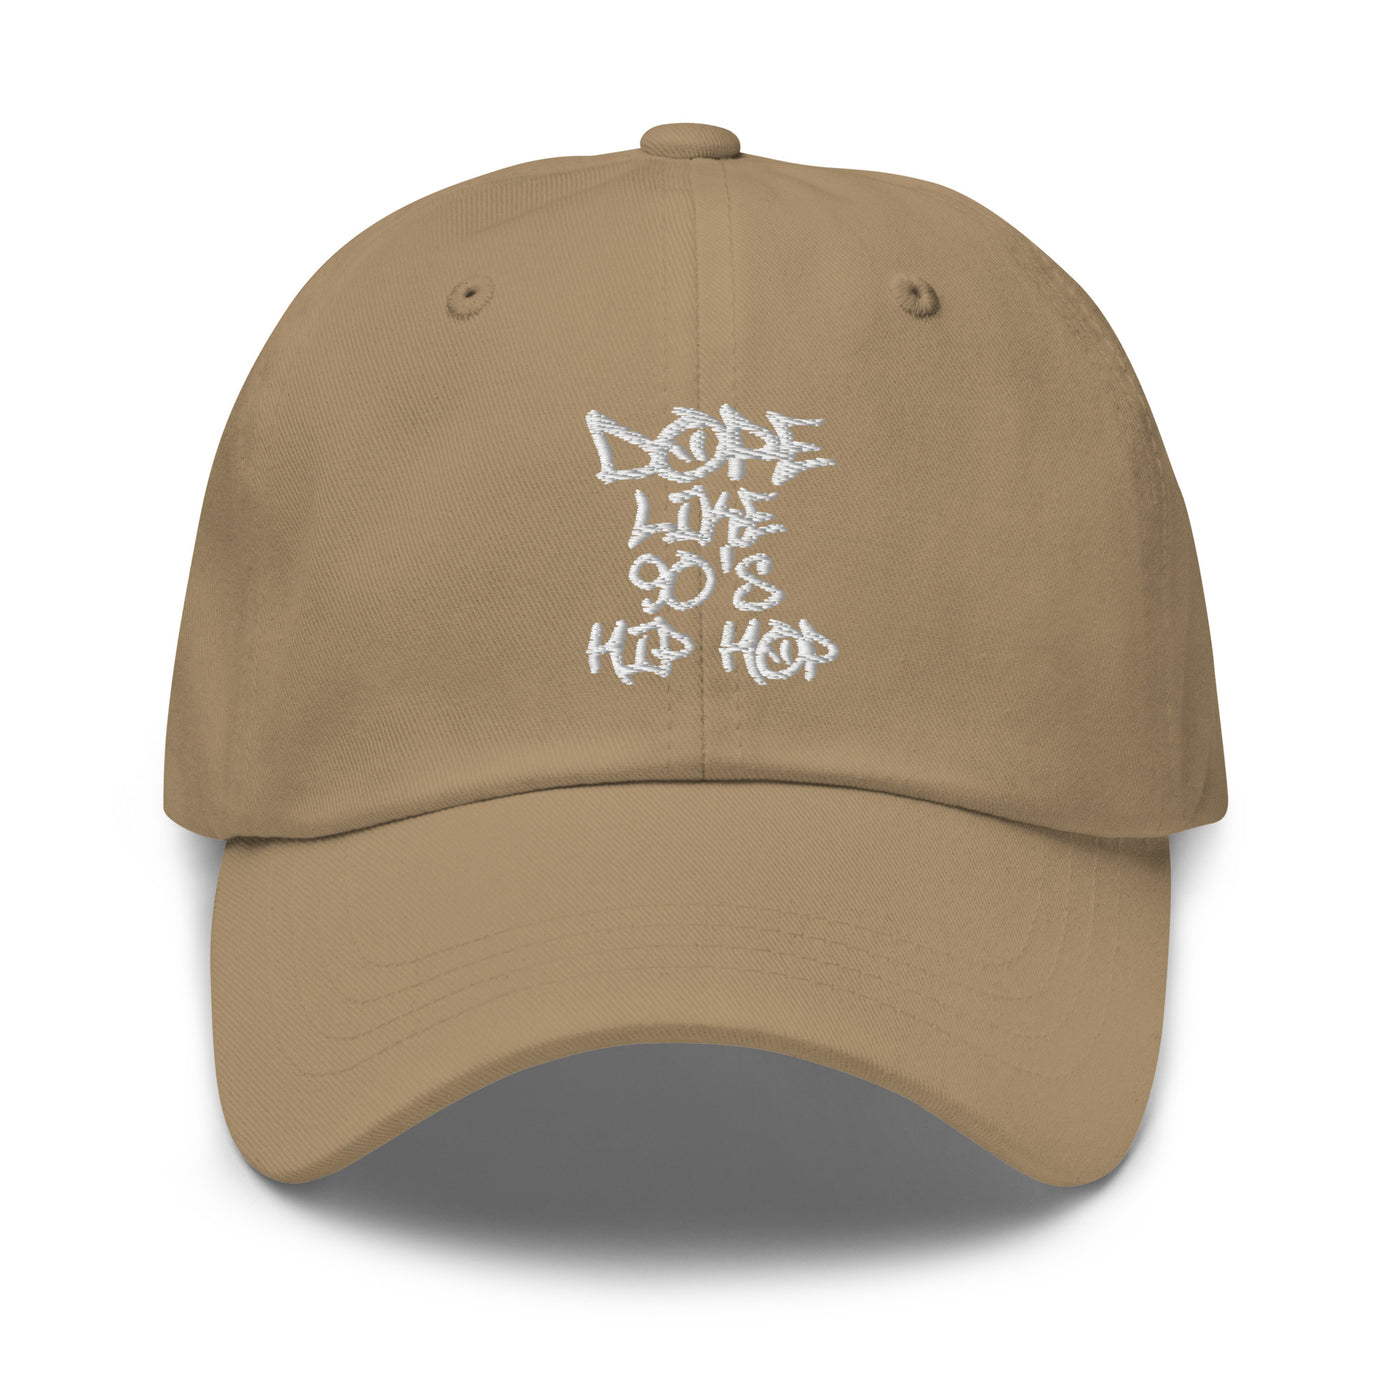 DOPE LIKE 90'S HIP HOP unisex hat